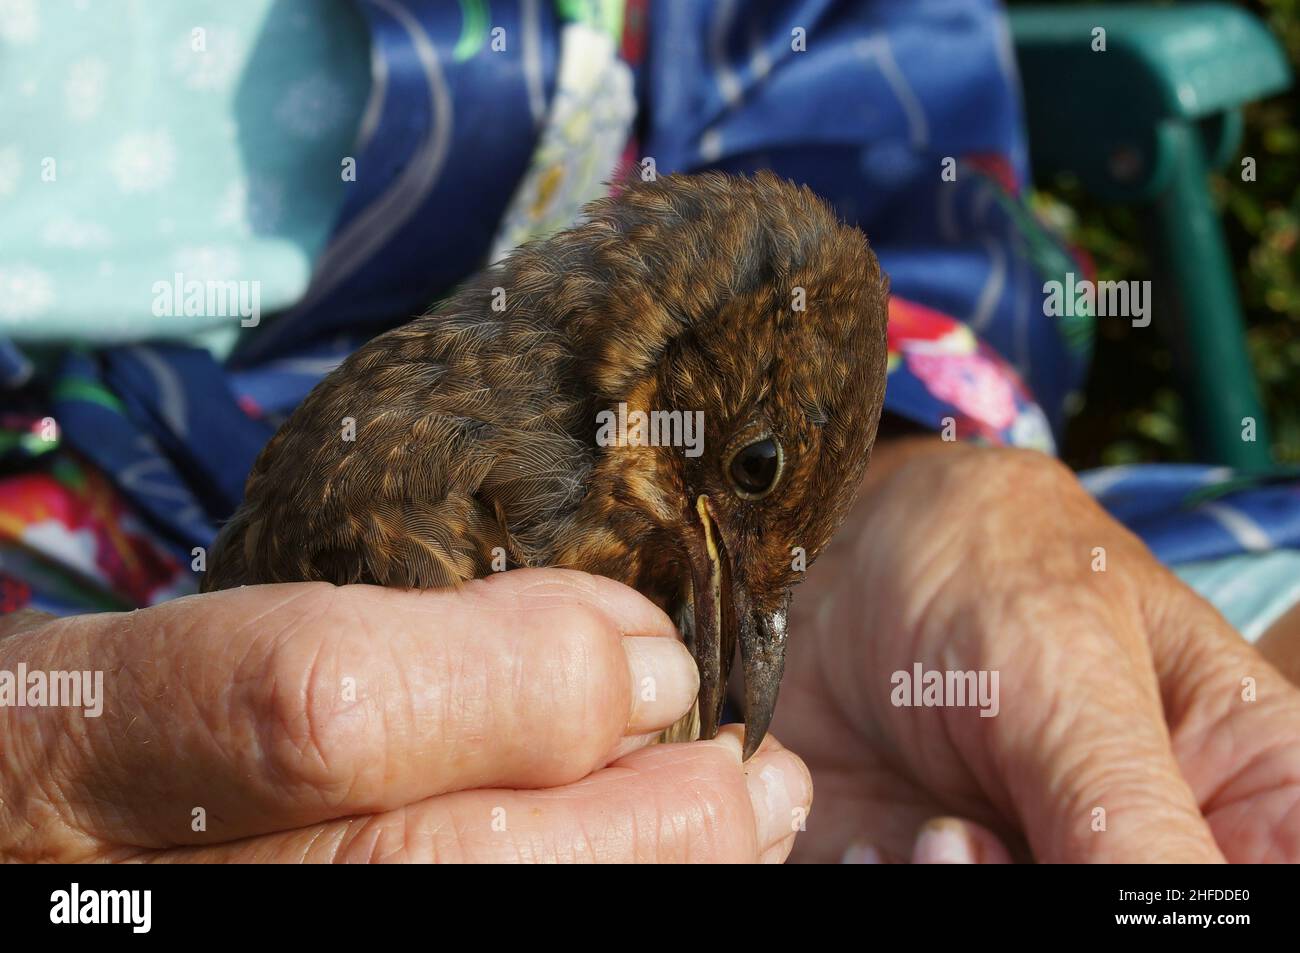 Nahaufnahme eines verletzten jungen Vogels mit Futter im Schnabel, während er von einem fürsorglichen Menschen von Hand gefüttert wurde Stockfoto